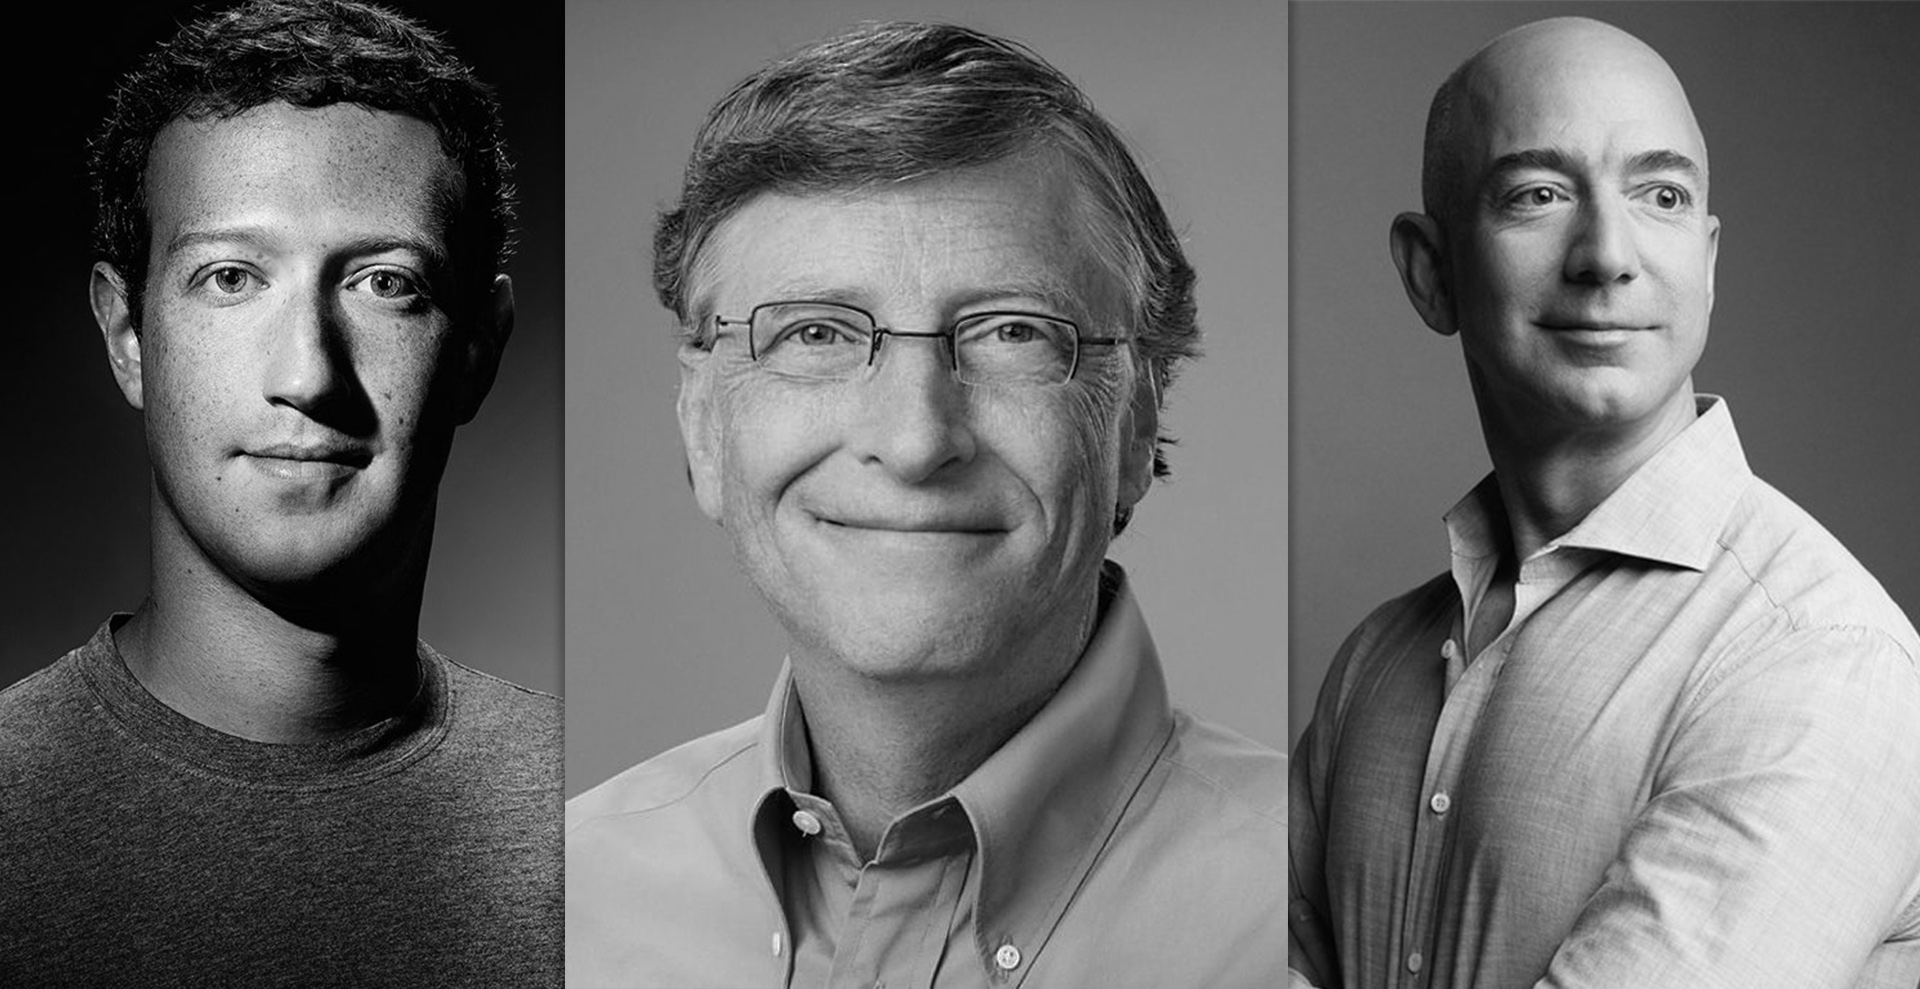 ЧТО НАМ ГОТОВИТ 2022? Известные предприниматели и визионеры Марк Цукерберг, Джефф Безос и Билл Гейтс о том, как вскоре изменится наш мир